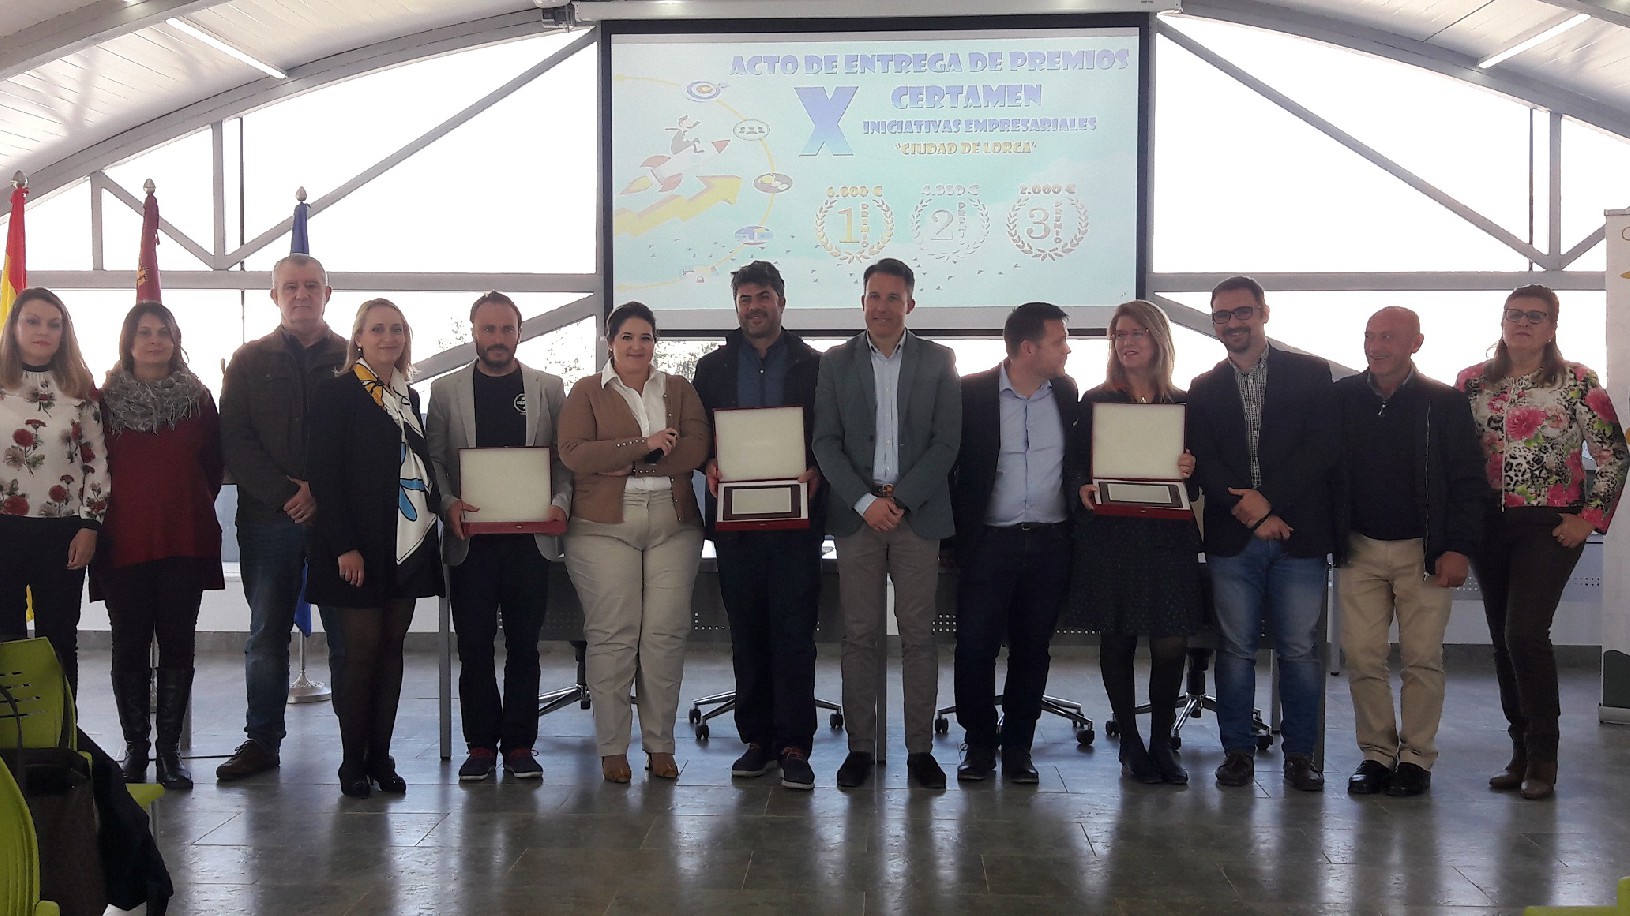 El X Certamen de Iniciativas Empresariales Ciudad de Lorca premia a los emprendedores de las firmas Aire Nuevo, Ofislor Siglo XXI y Cervezas Colapso